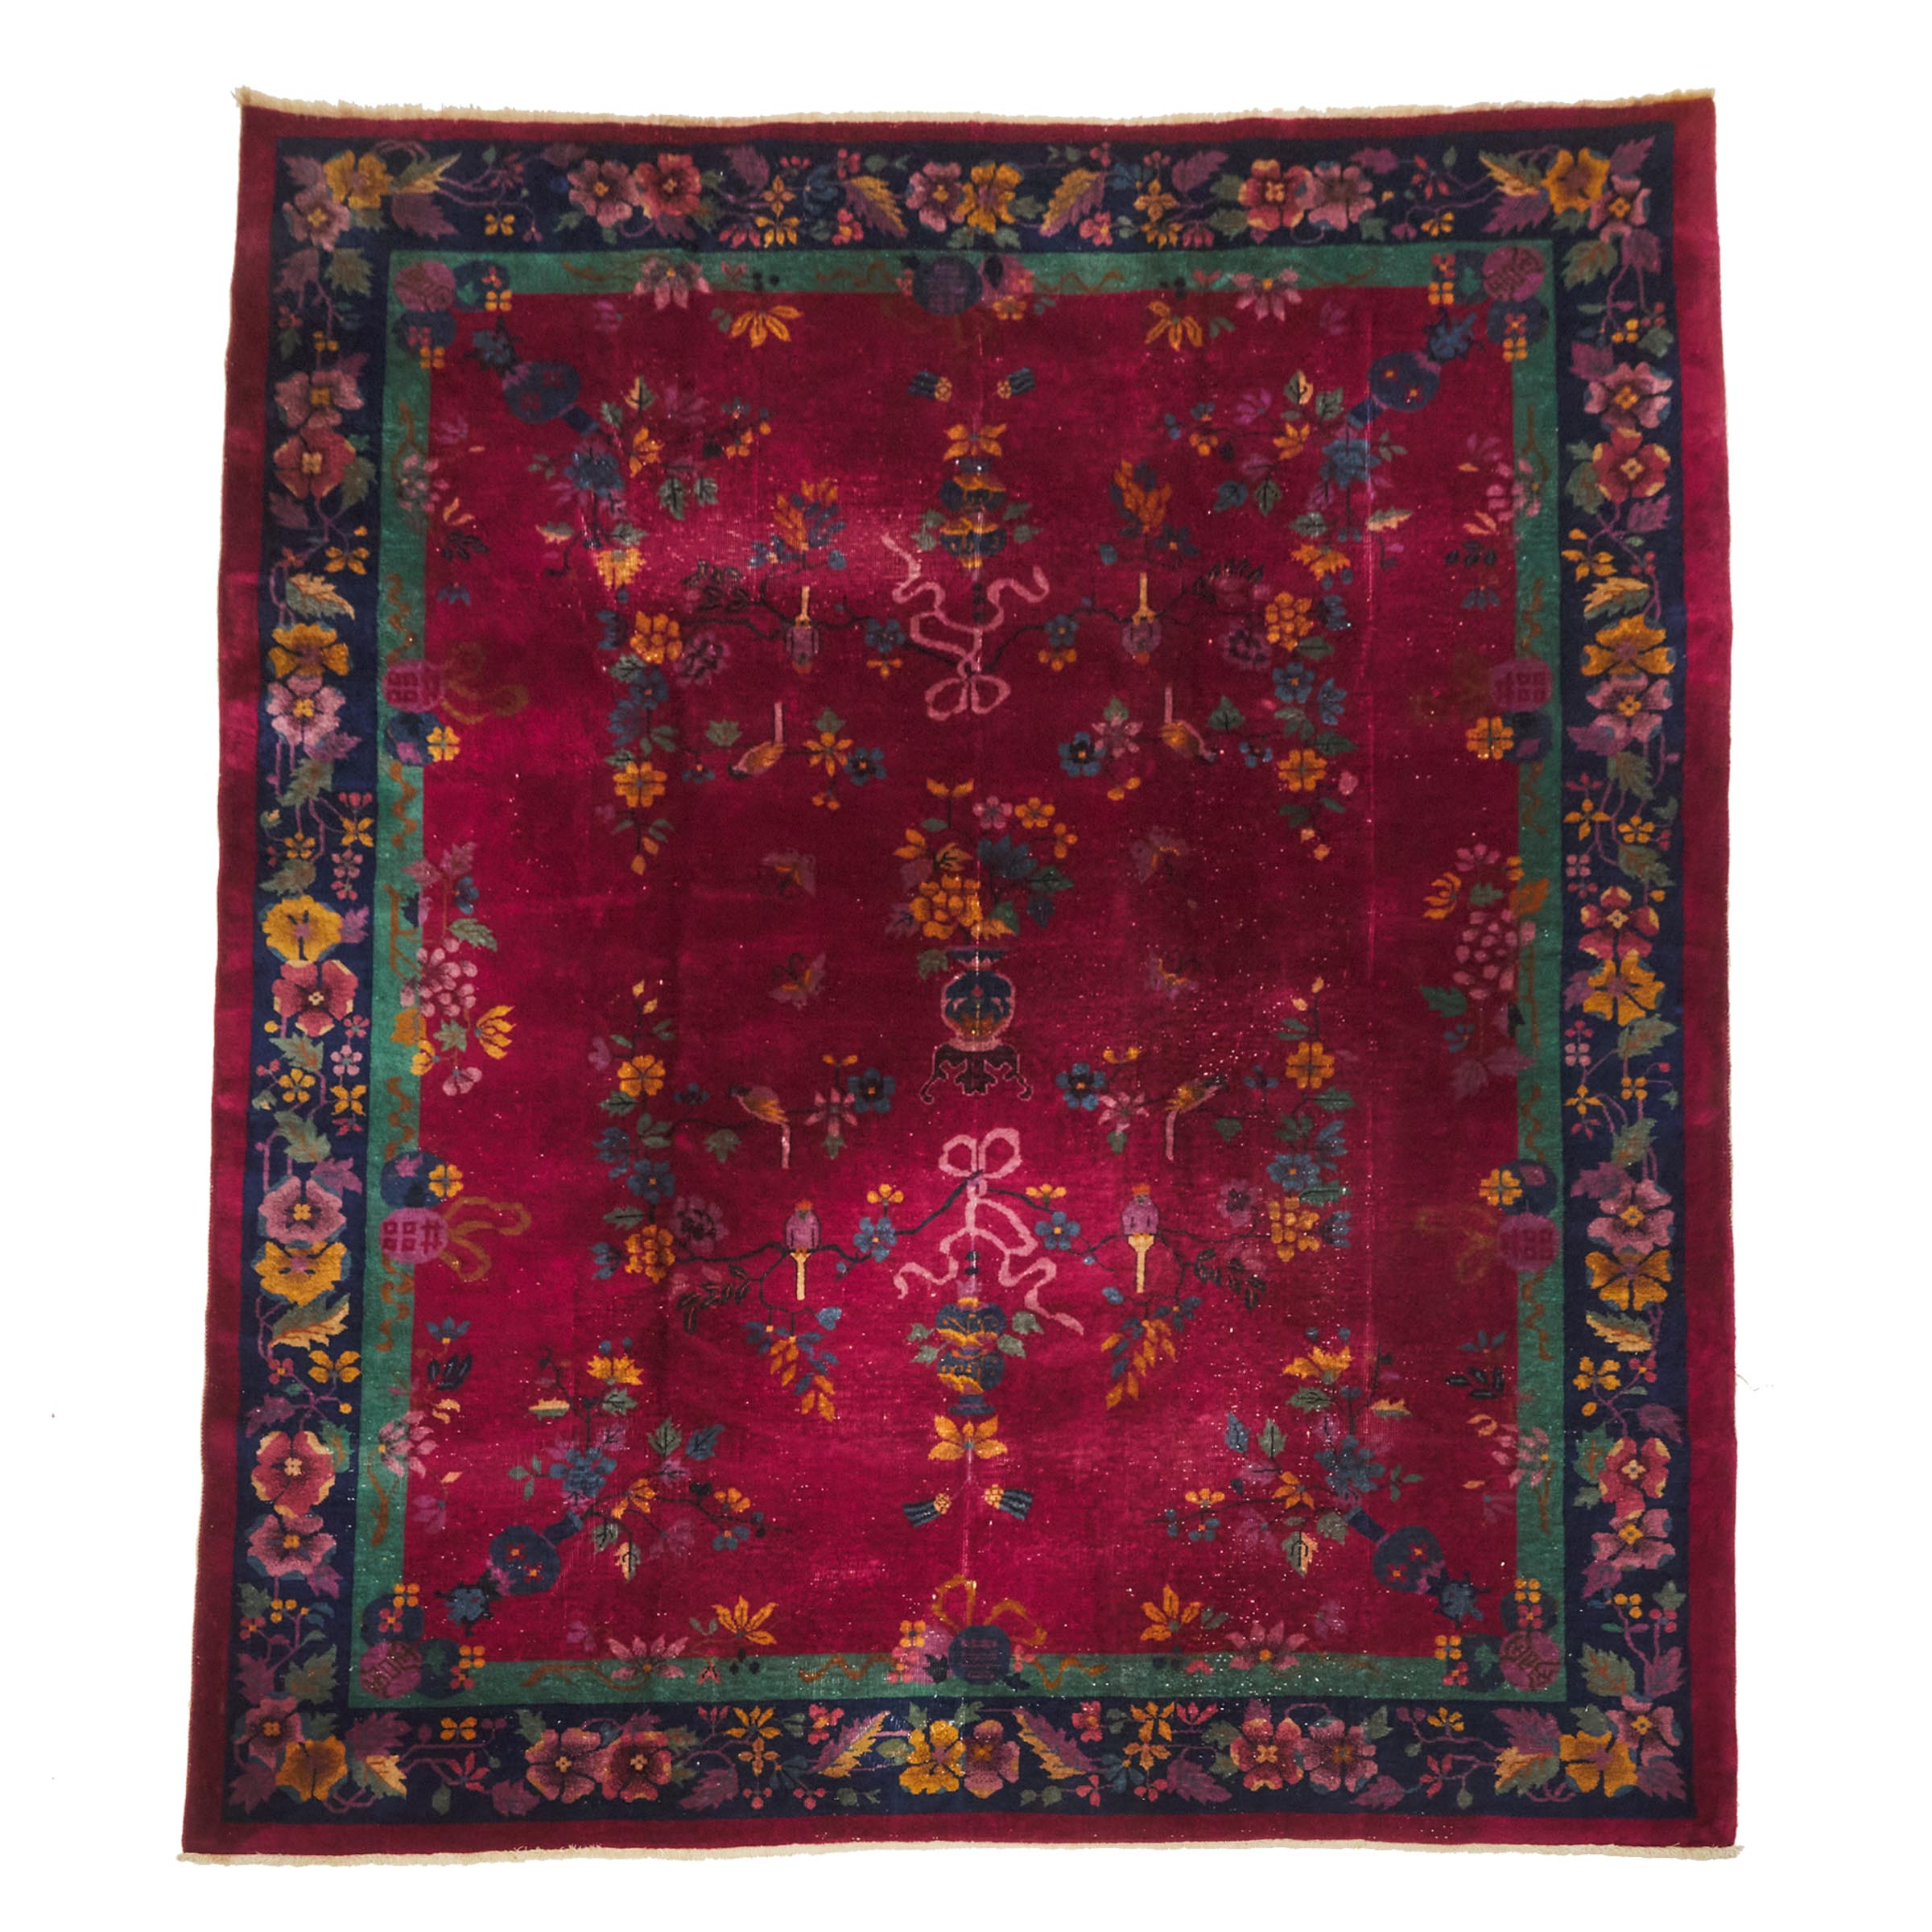 Chinese Peking Carpet, c.1920/30